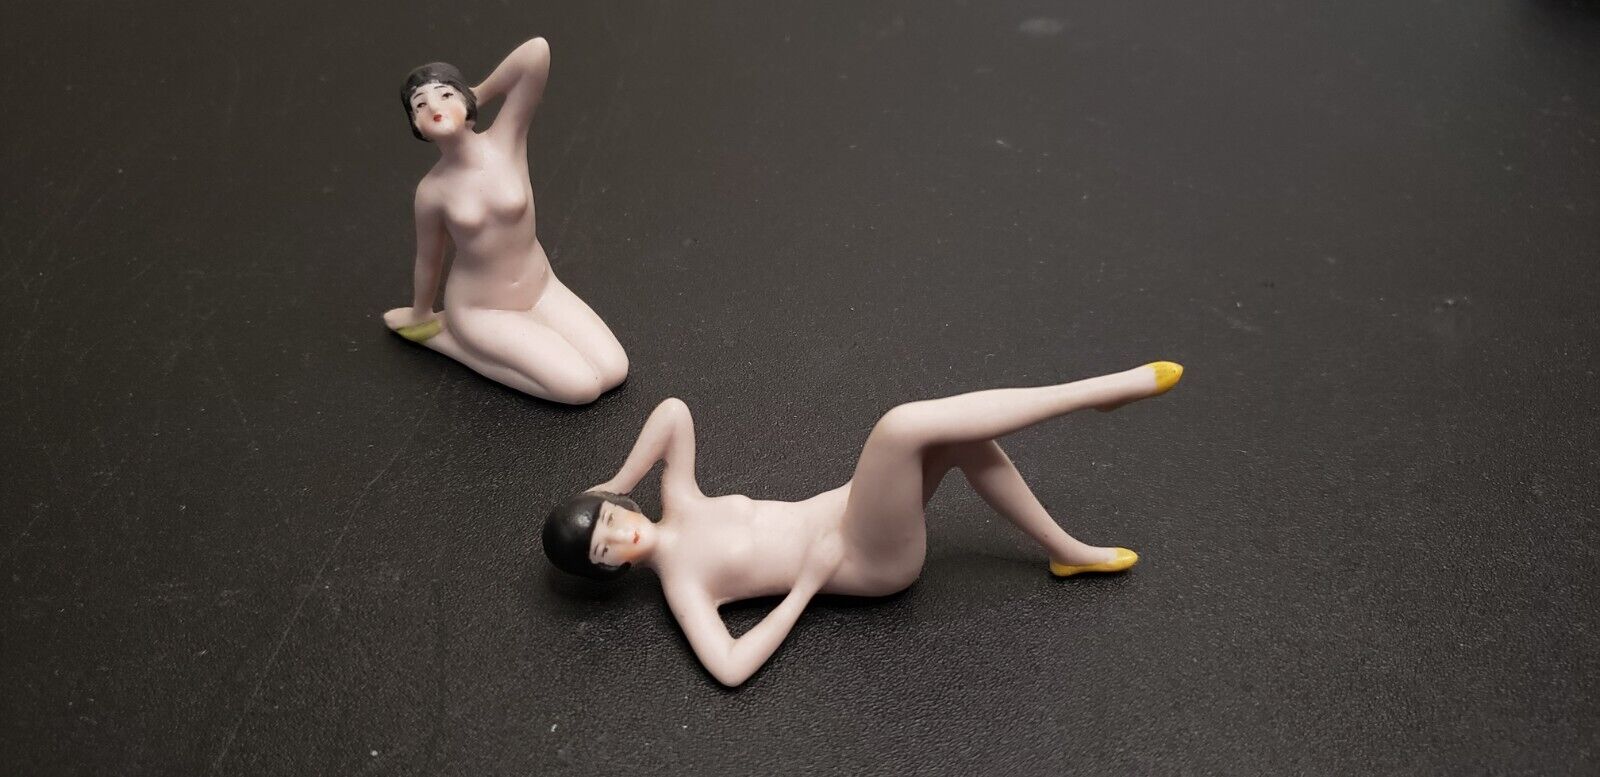 Lot of 2 Vintage German Bisque Reclining Bathing Beauty Nude Figurines Dark Hair